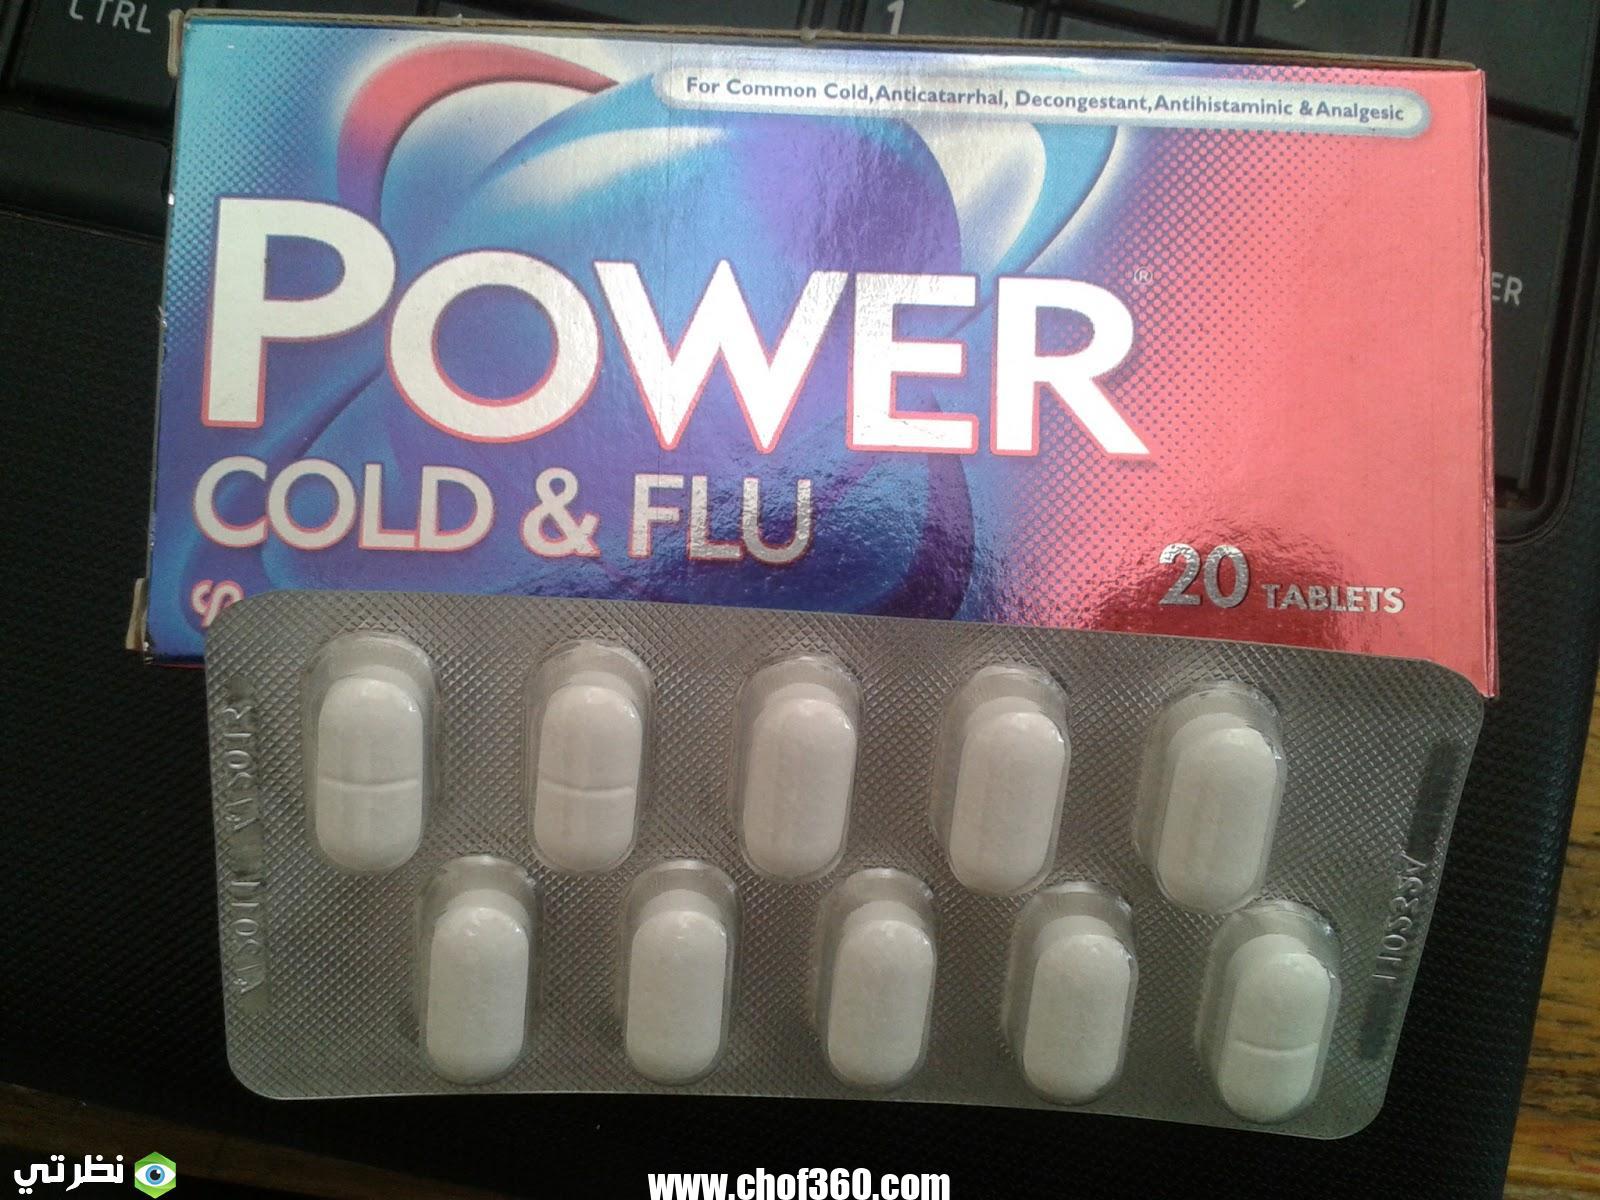 عقار باور كولد آند فلو (power cold & flu) دواعي الاستعمال والآثار الجانبية للدواء